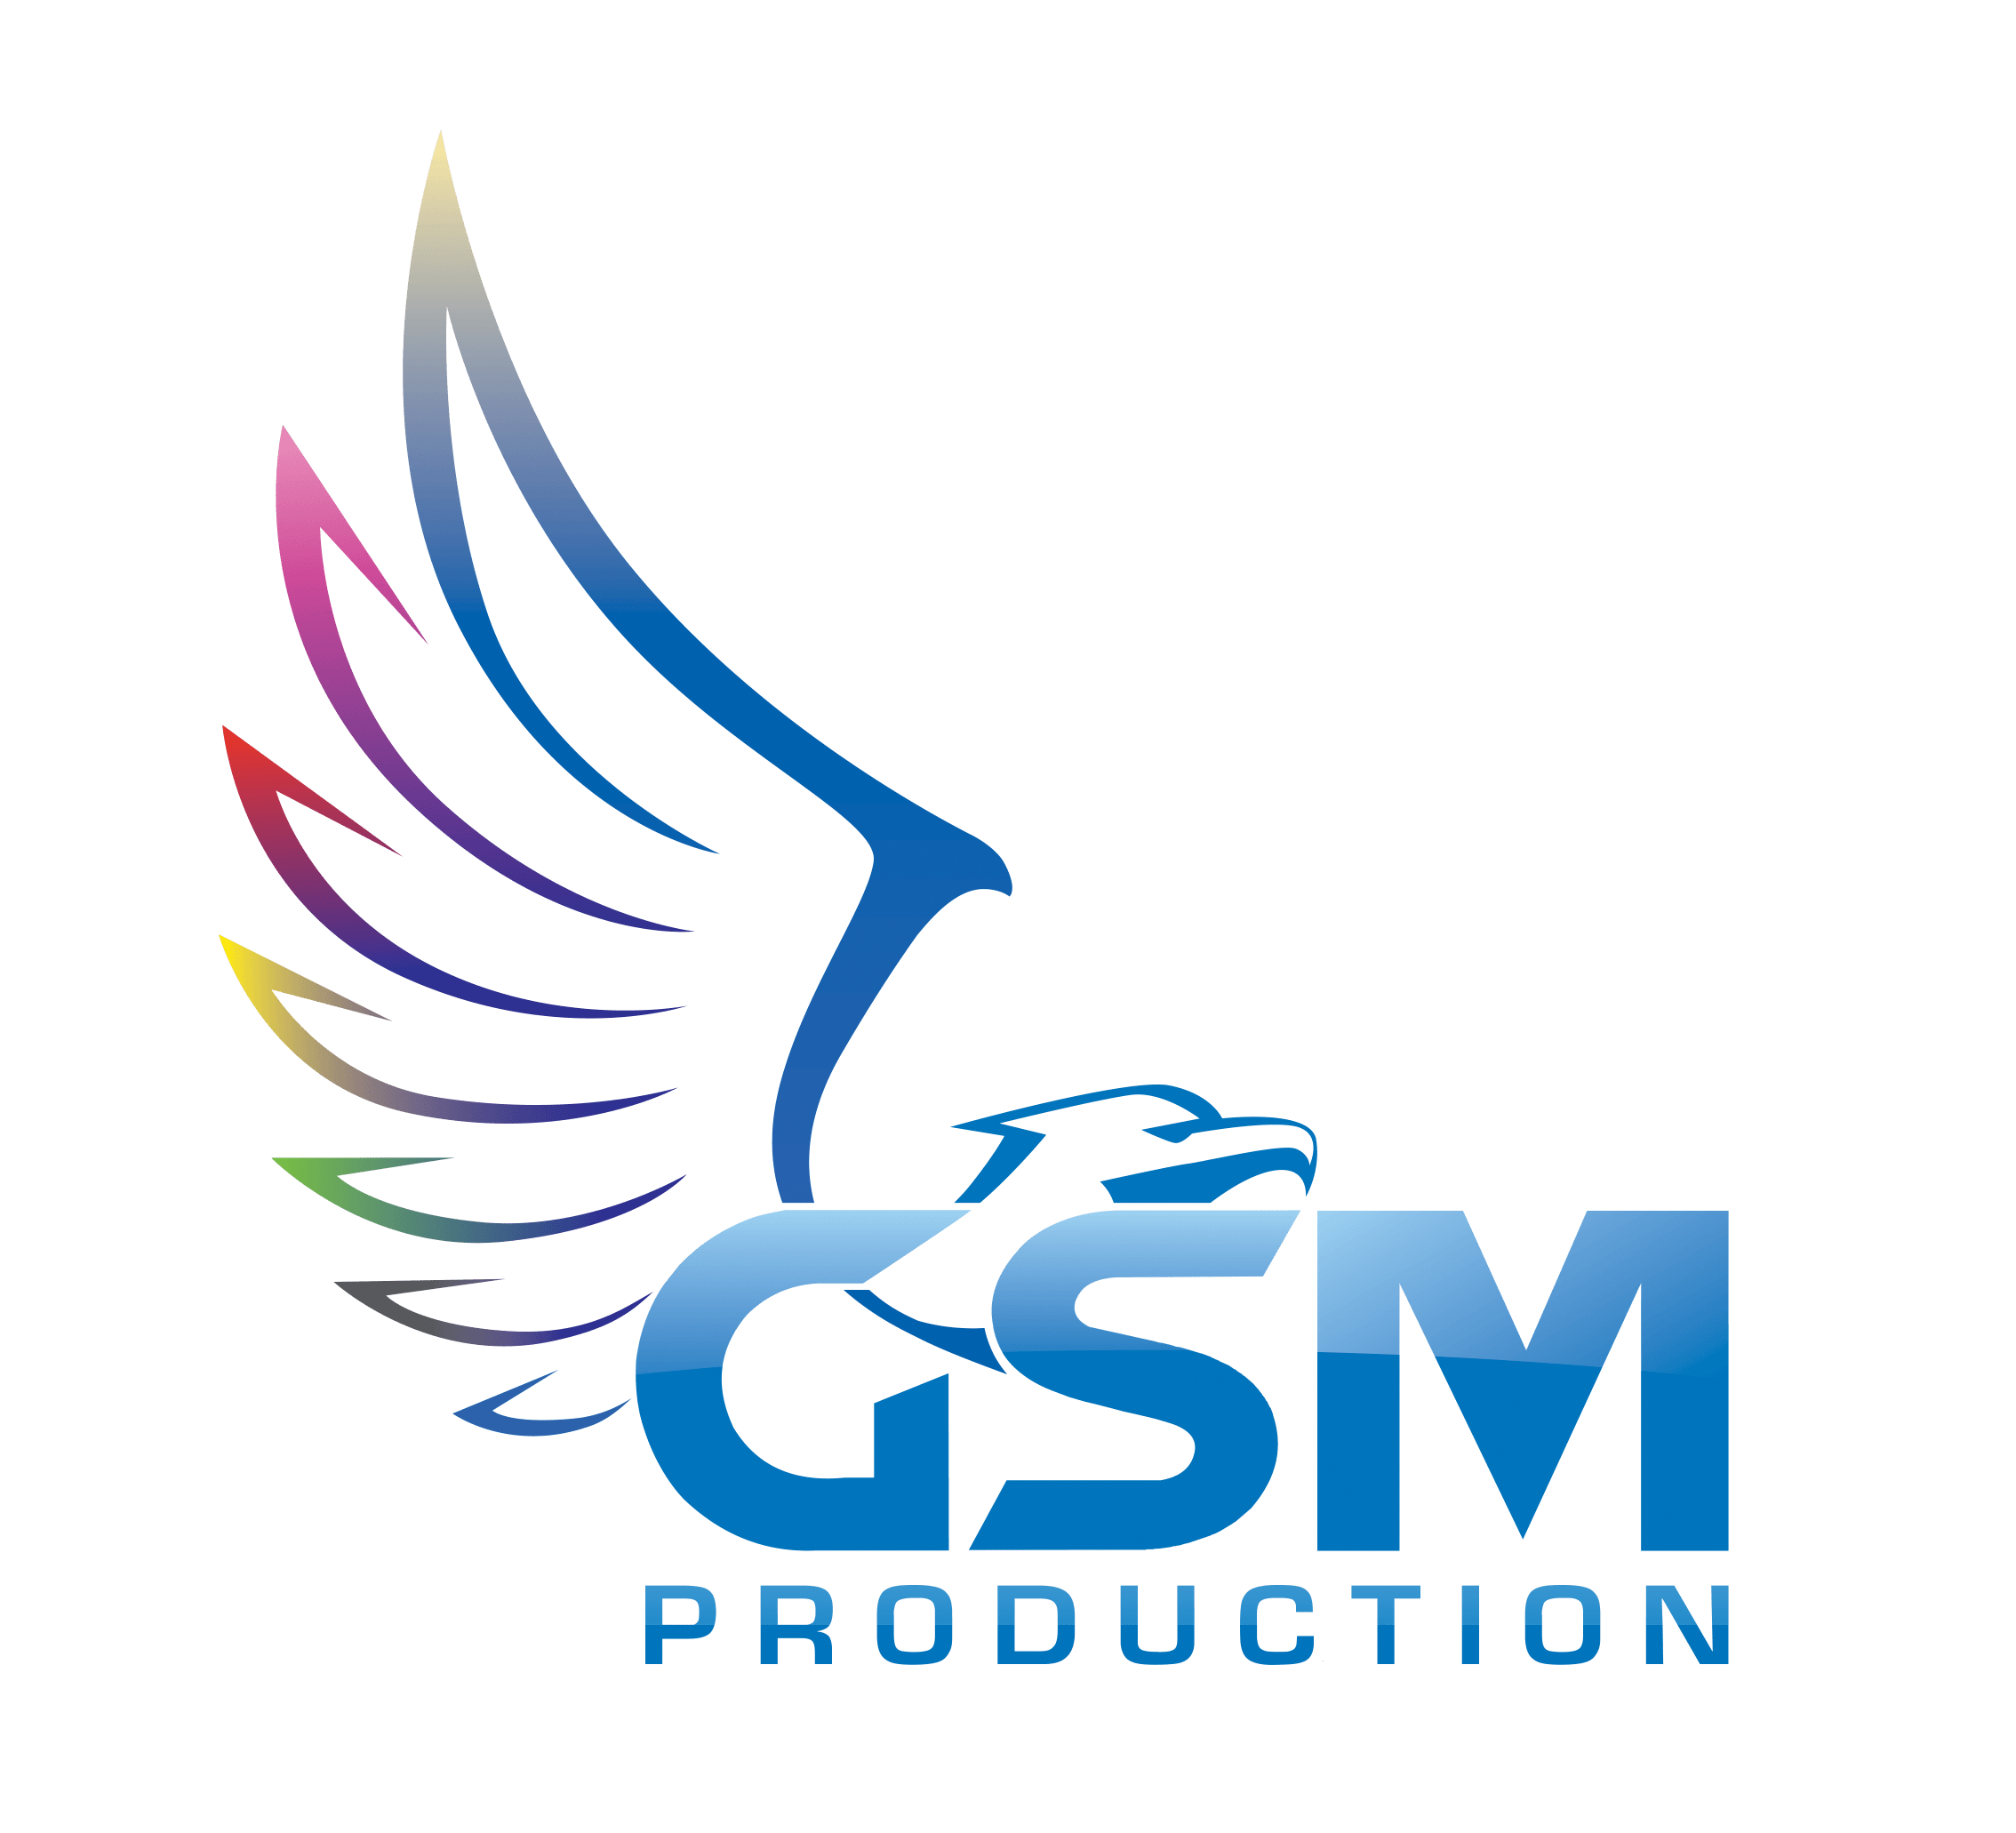 GSM Logo - Gsm logo 8 logodesignfx